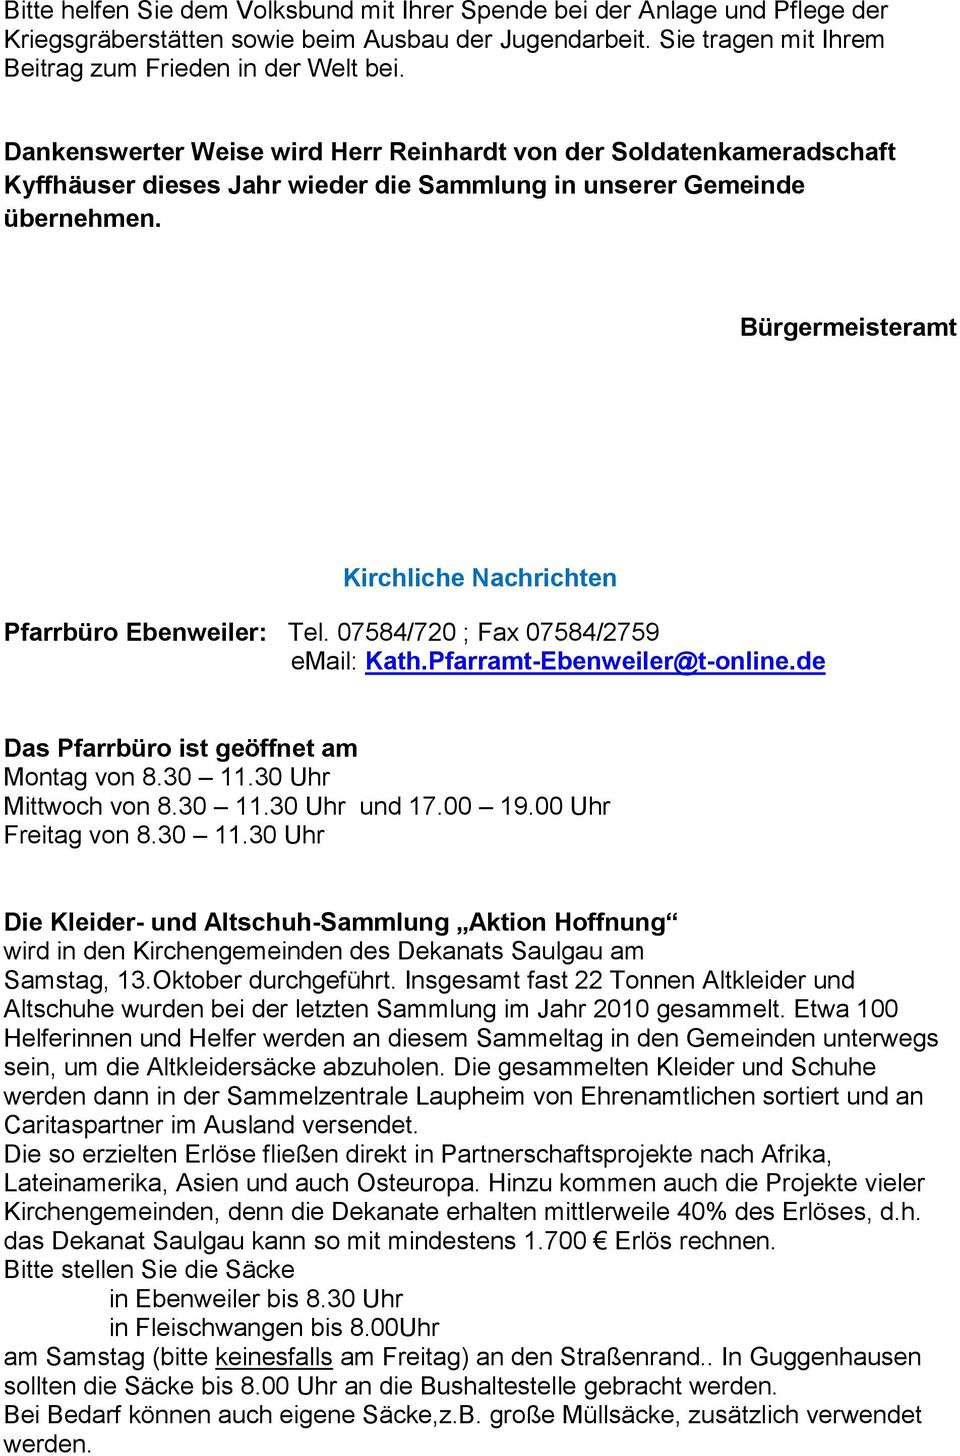 Bürgermeisteramt Kirchliche Nachrichten Pfarrbüro Ebenweiler: Tel. 07584/720 ; Fax 07584/2759 email: Kath.Pfarramt-Ebenweiler@t-online.de Das Pfarrbüro ist geöffnet am Montag von 8.30 11.